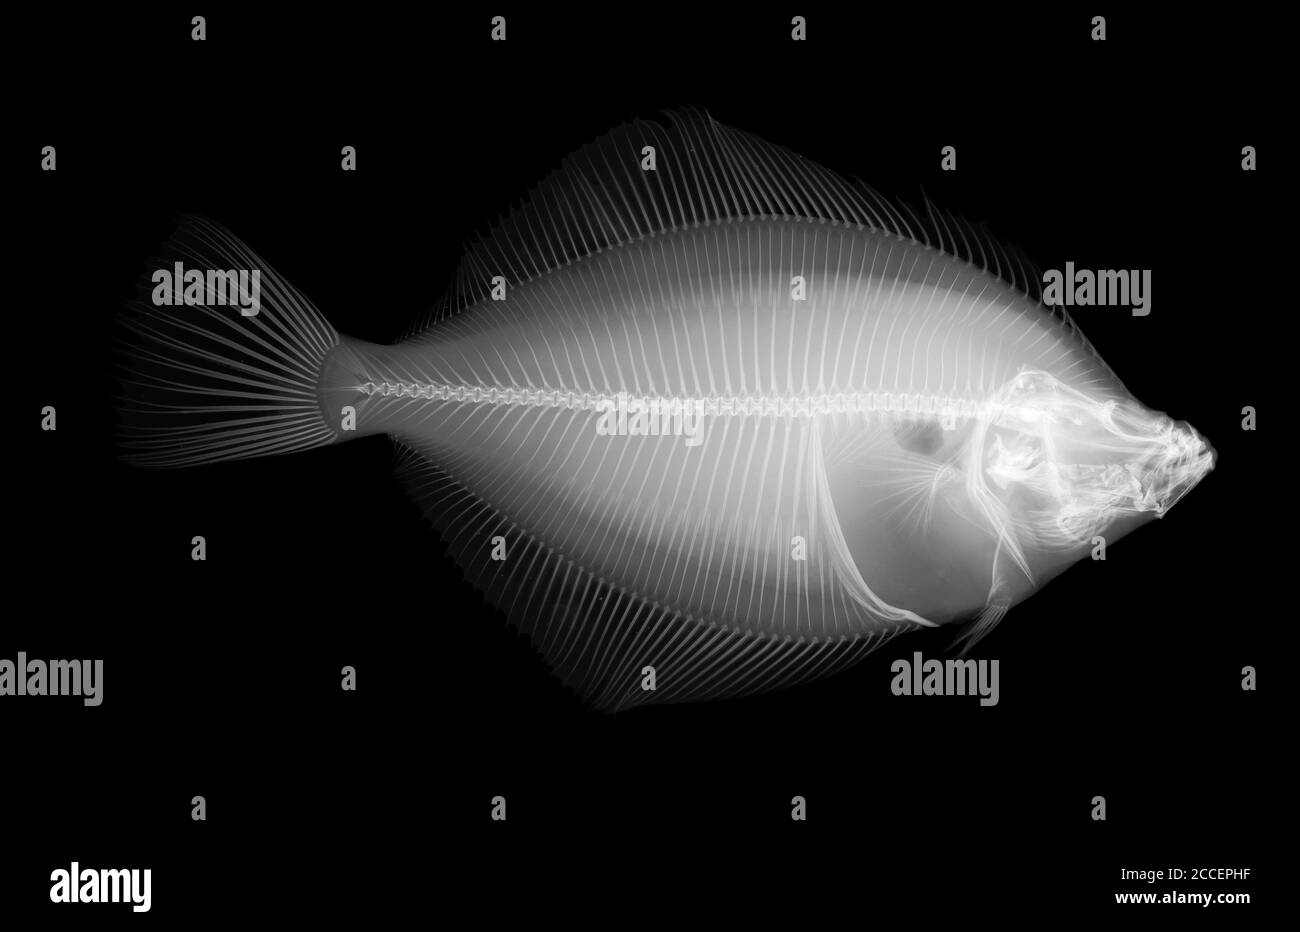 Plaice fish, X-ray Stock Photo